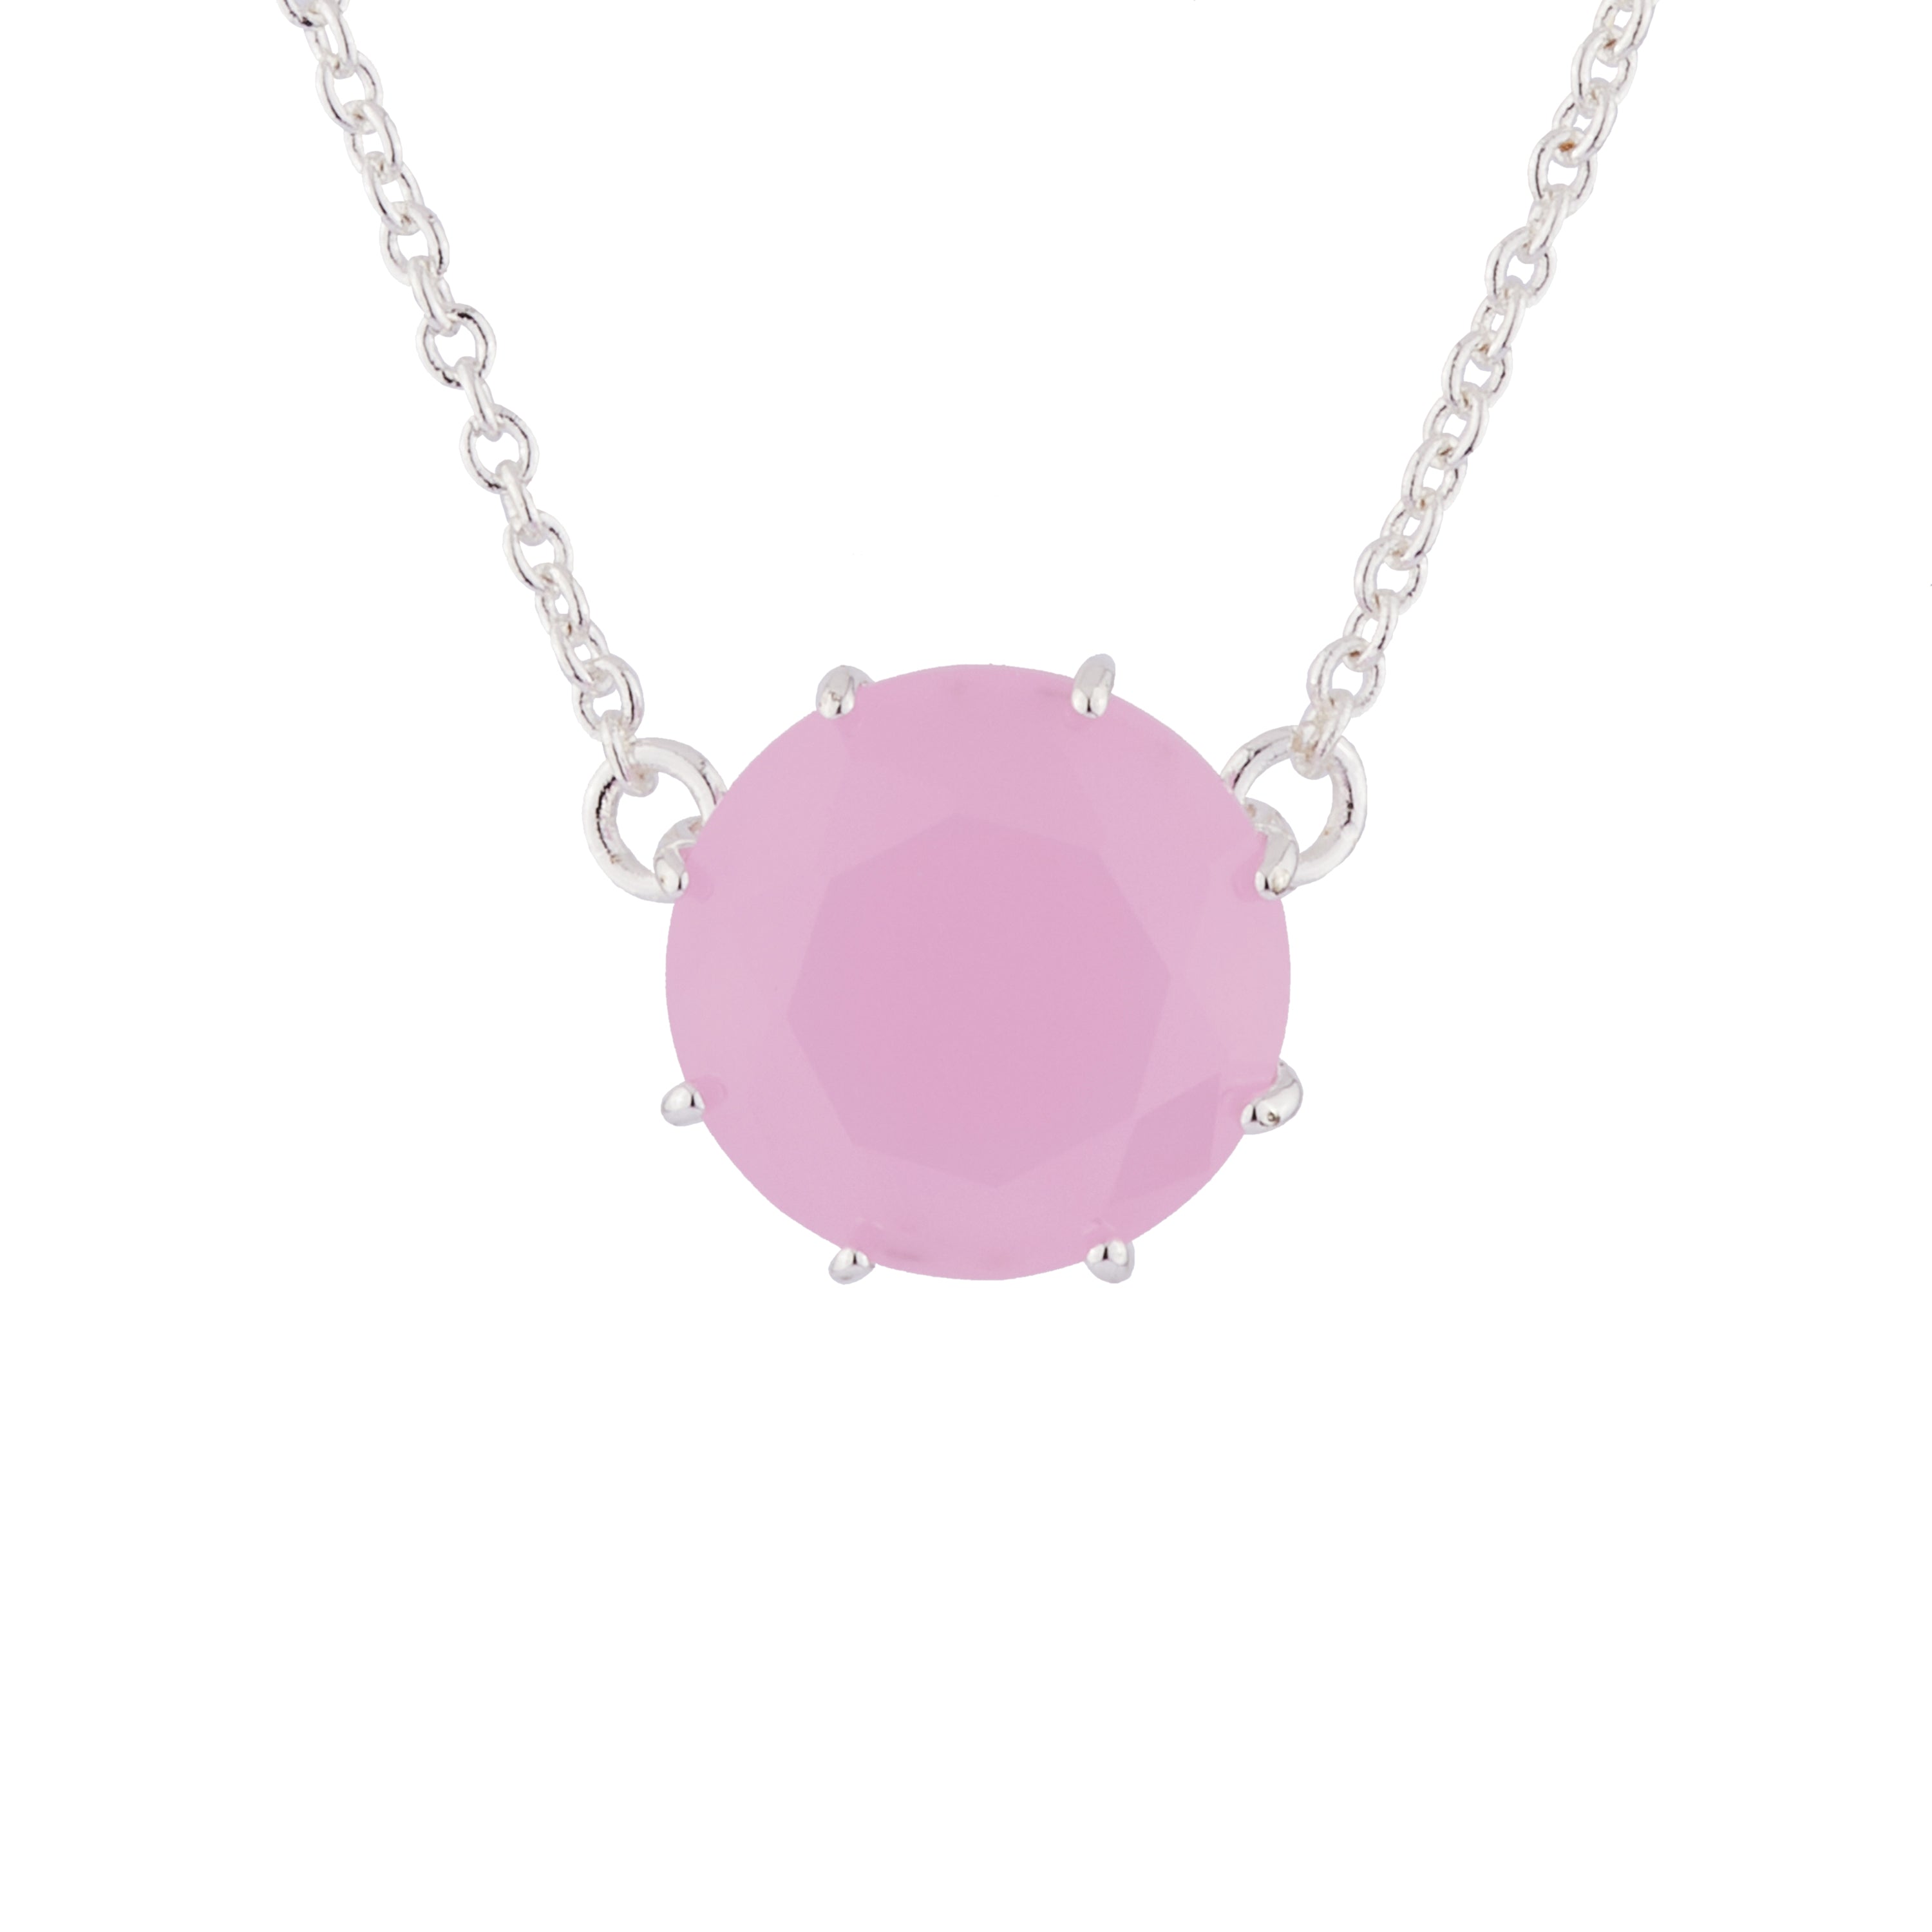 Pink round stone La Diamantine pendant necklace